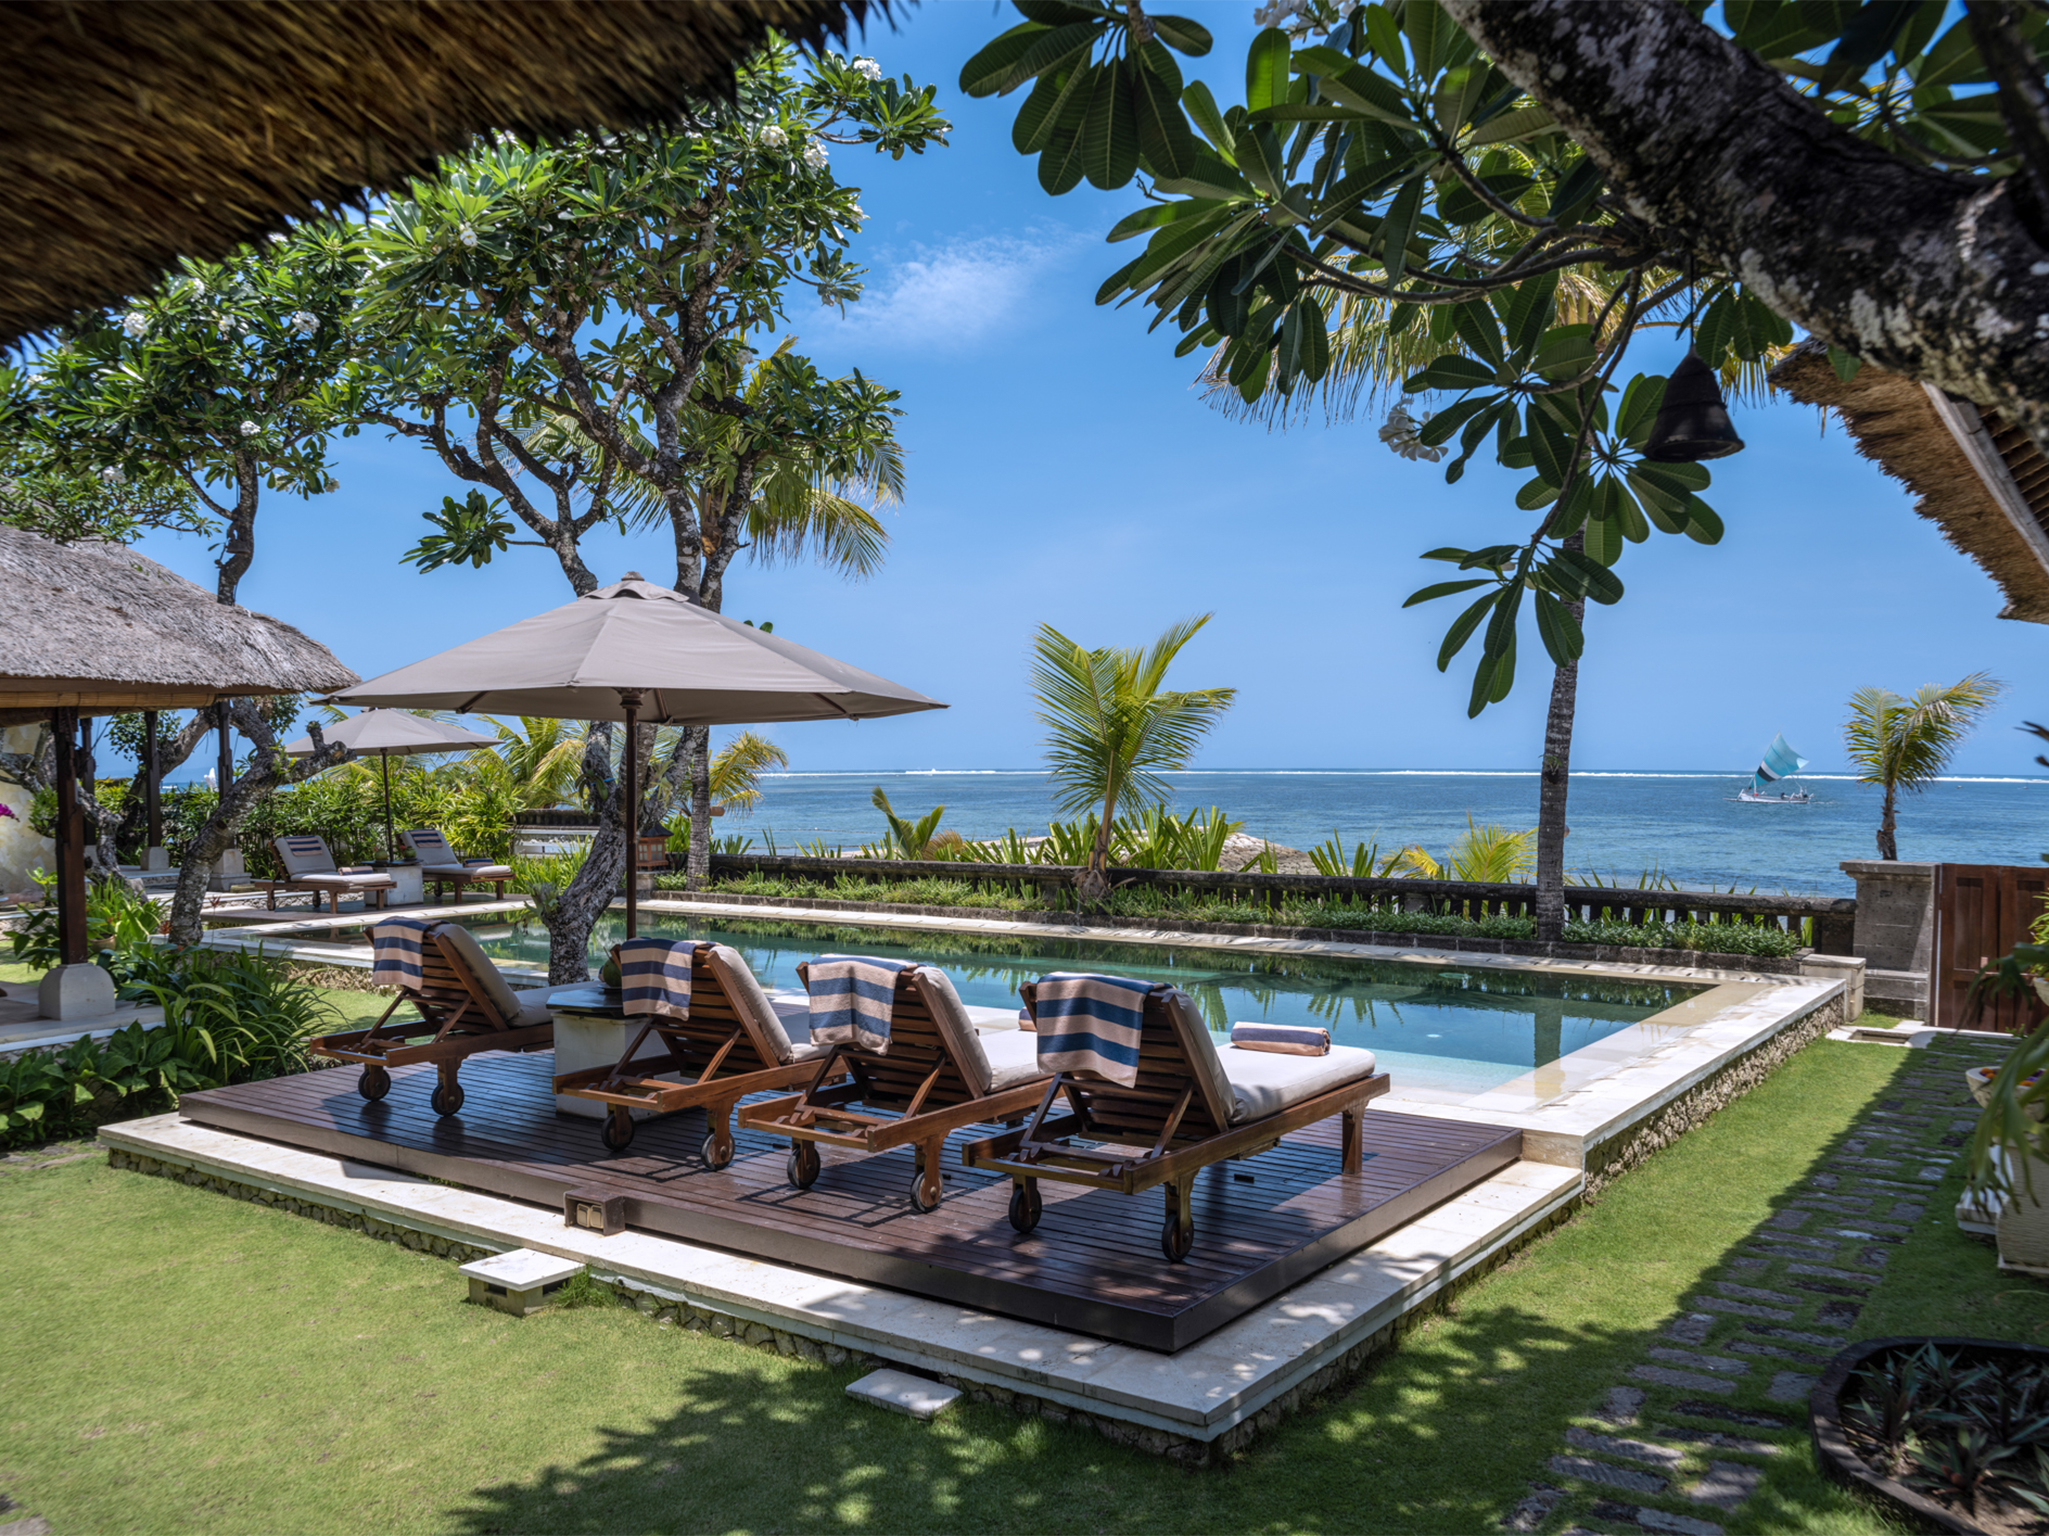 Villa Cemara - Loungers and sea view - Villa Cemara, Sanur, Bali